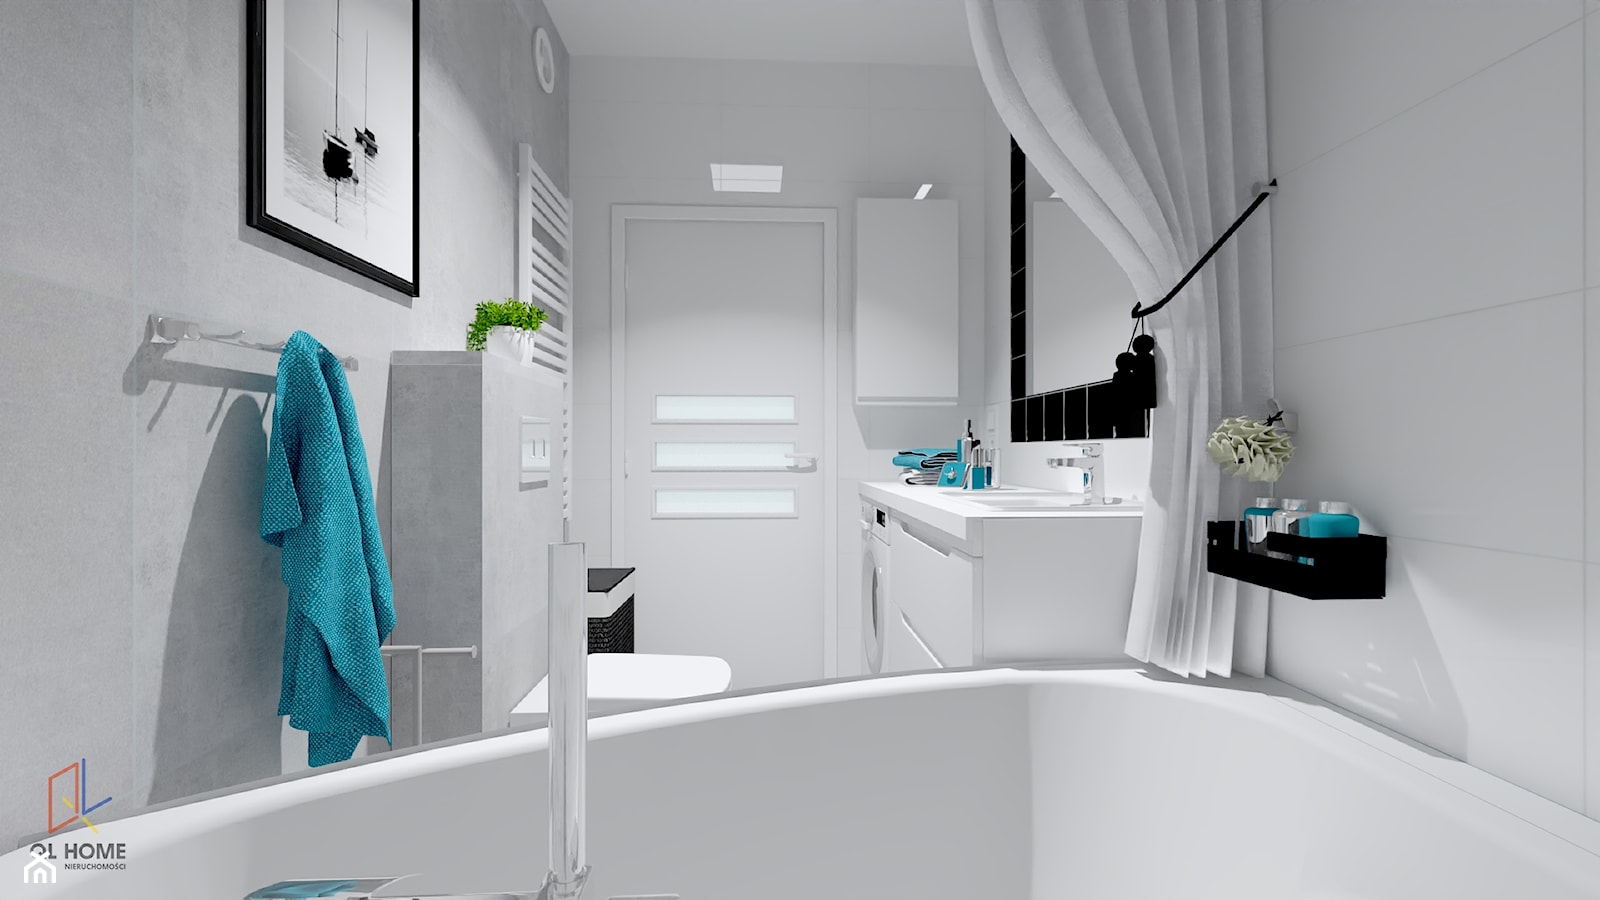 łazienka biało - czarna i dodatki w kolorze : ) - zdjęcie od QL Home - Homebook